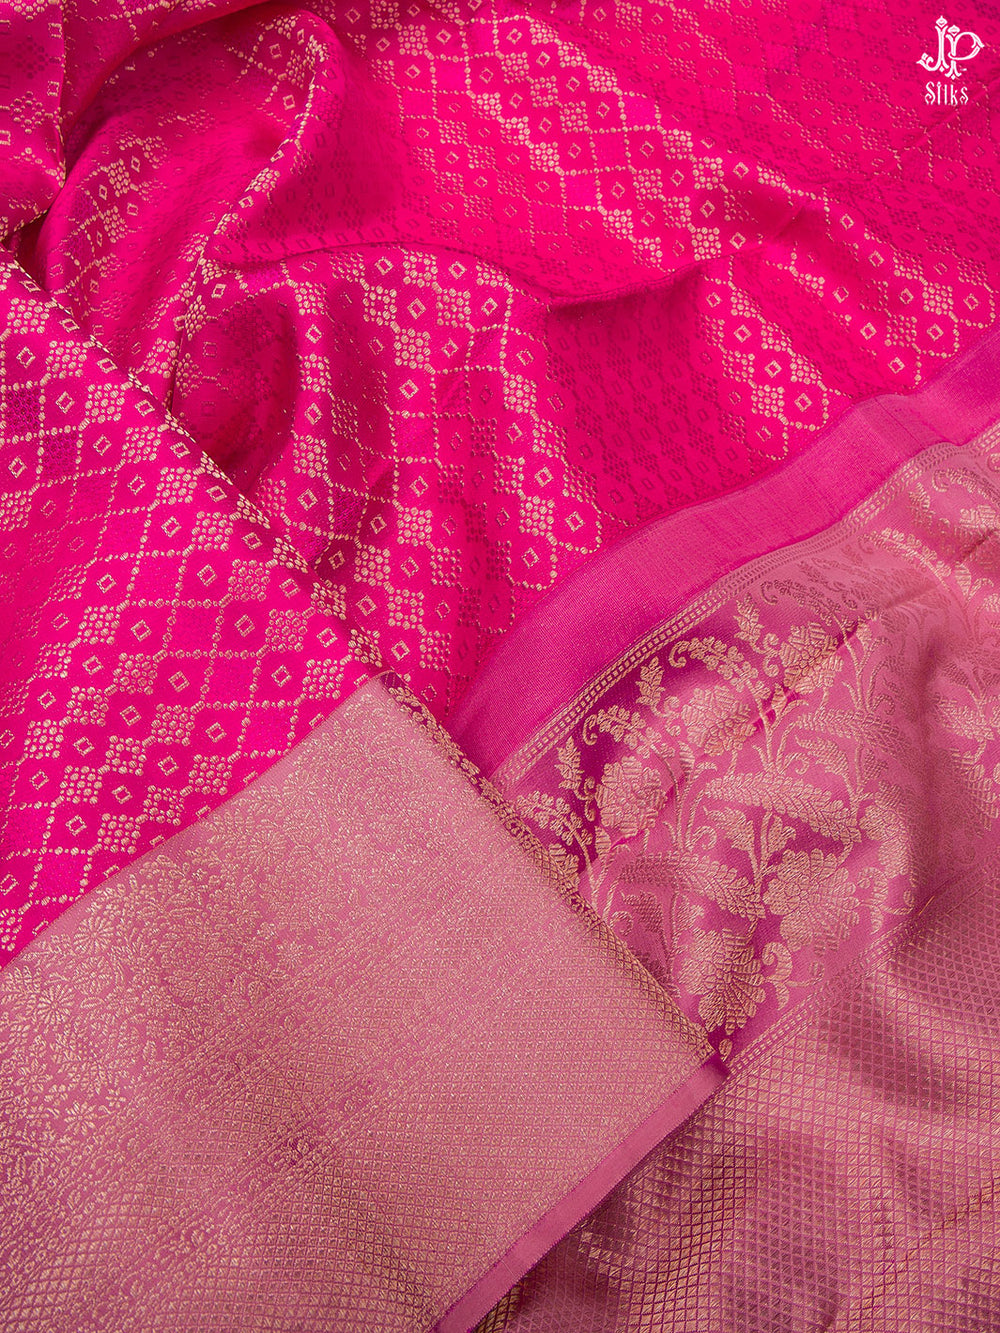 Pink Kanchipuram Silk Saree - D7259 - View 2